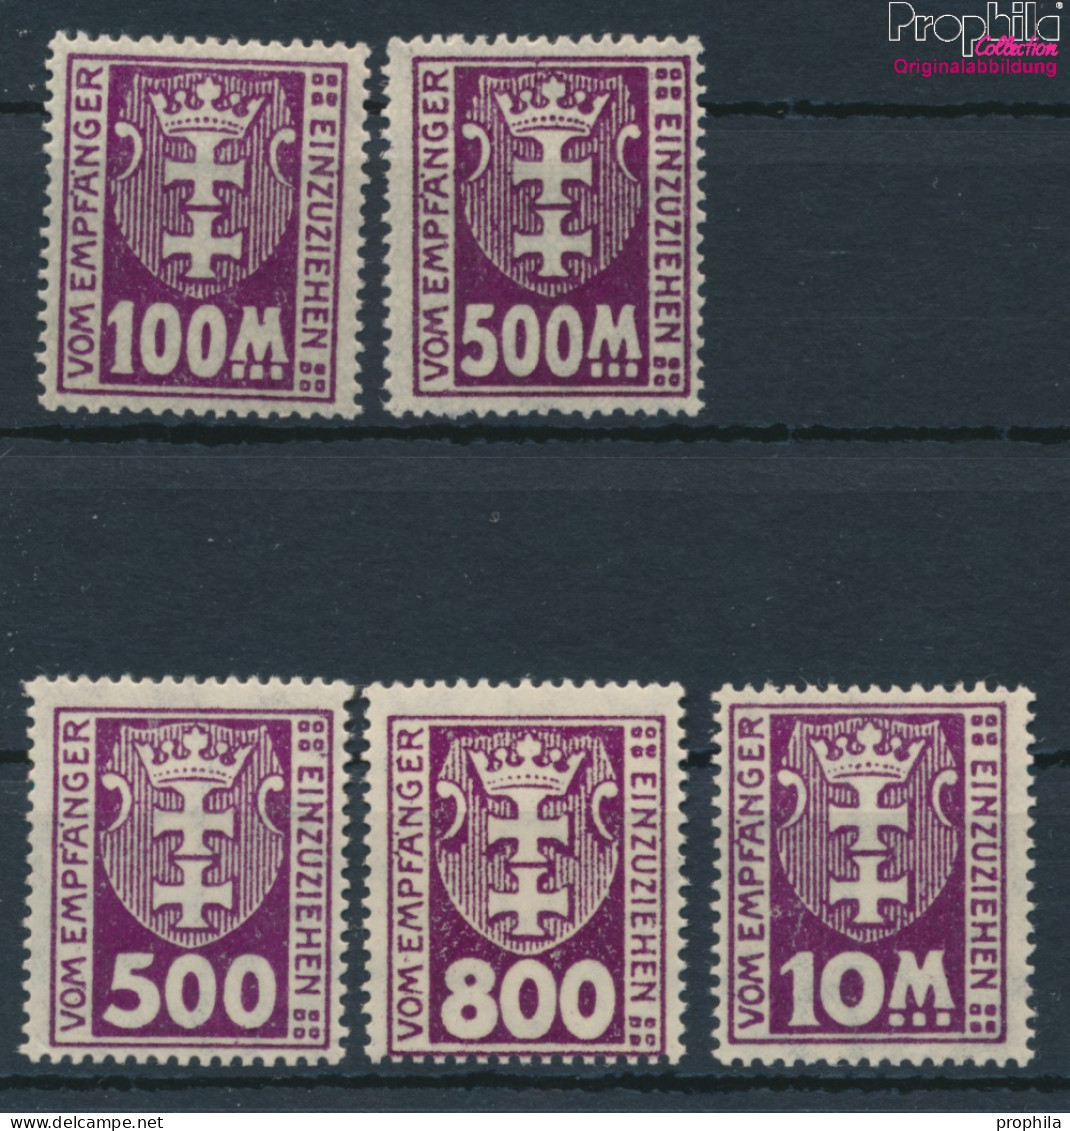 Danzig P19X-P25X (kompl.Ausg.), Stehendes Wssserzeichen Postfrisch 1923 Portomarke (10221859 - Impuestos